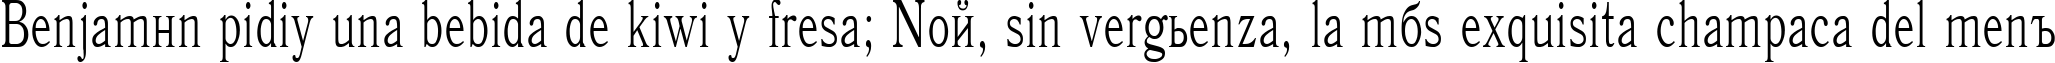 Пример написания шрифтом Antiqua70n текста на испанском